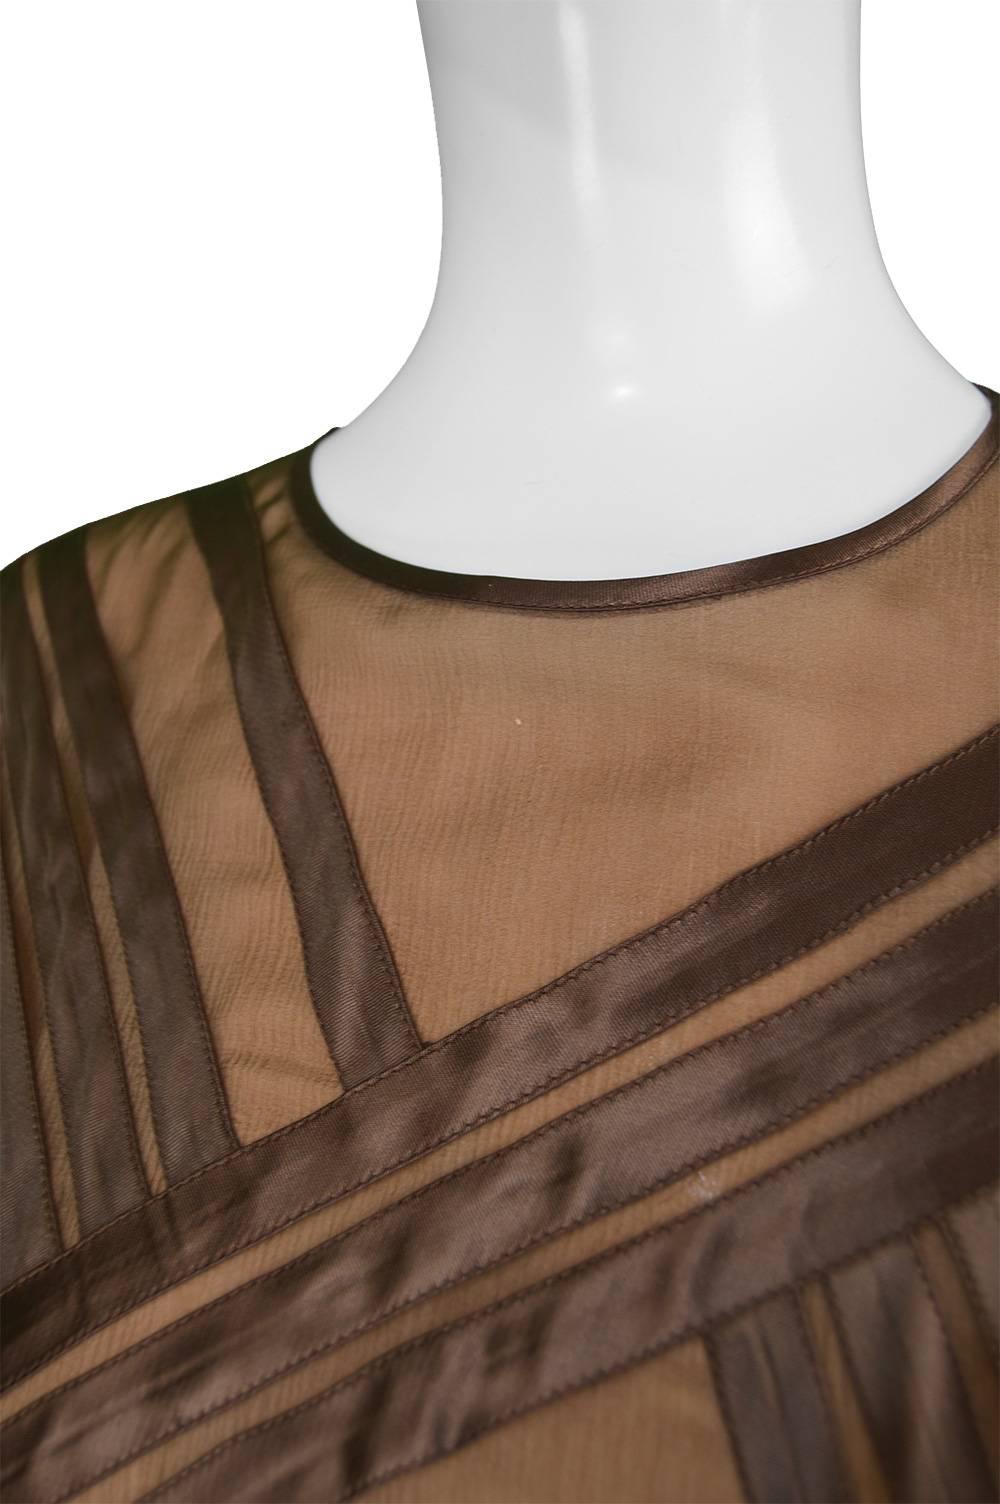 Women's Louis Feraud Haute Couture Brown Sheer Silk Chiffon / Bias Cut Satin Gown, 1970s